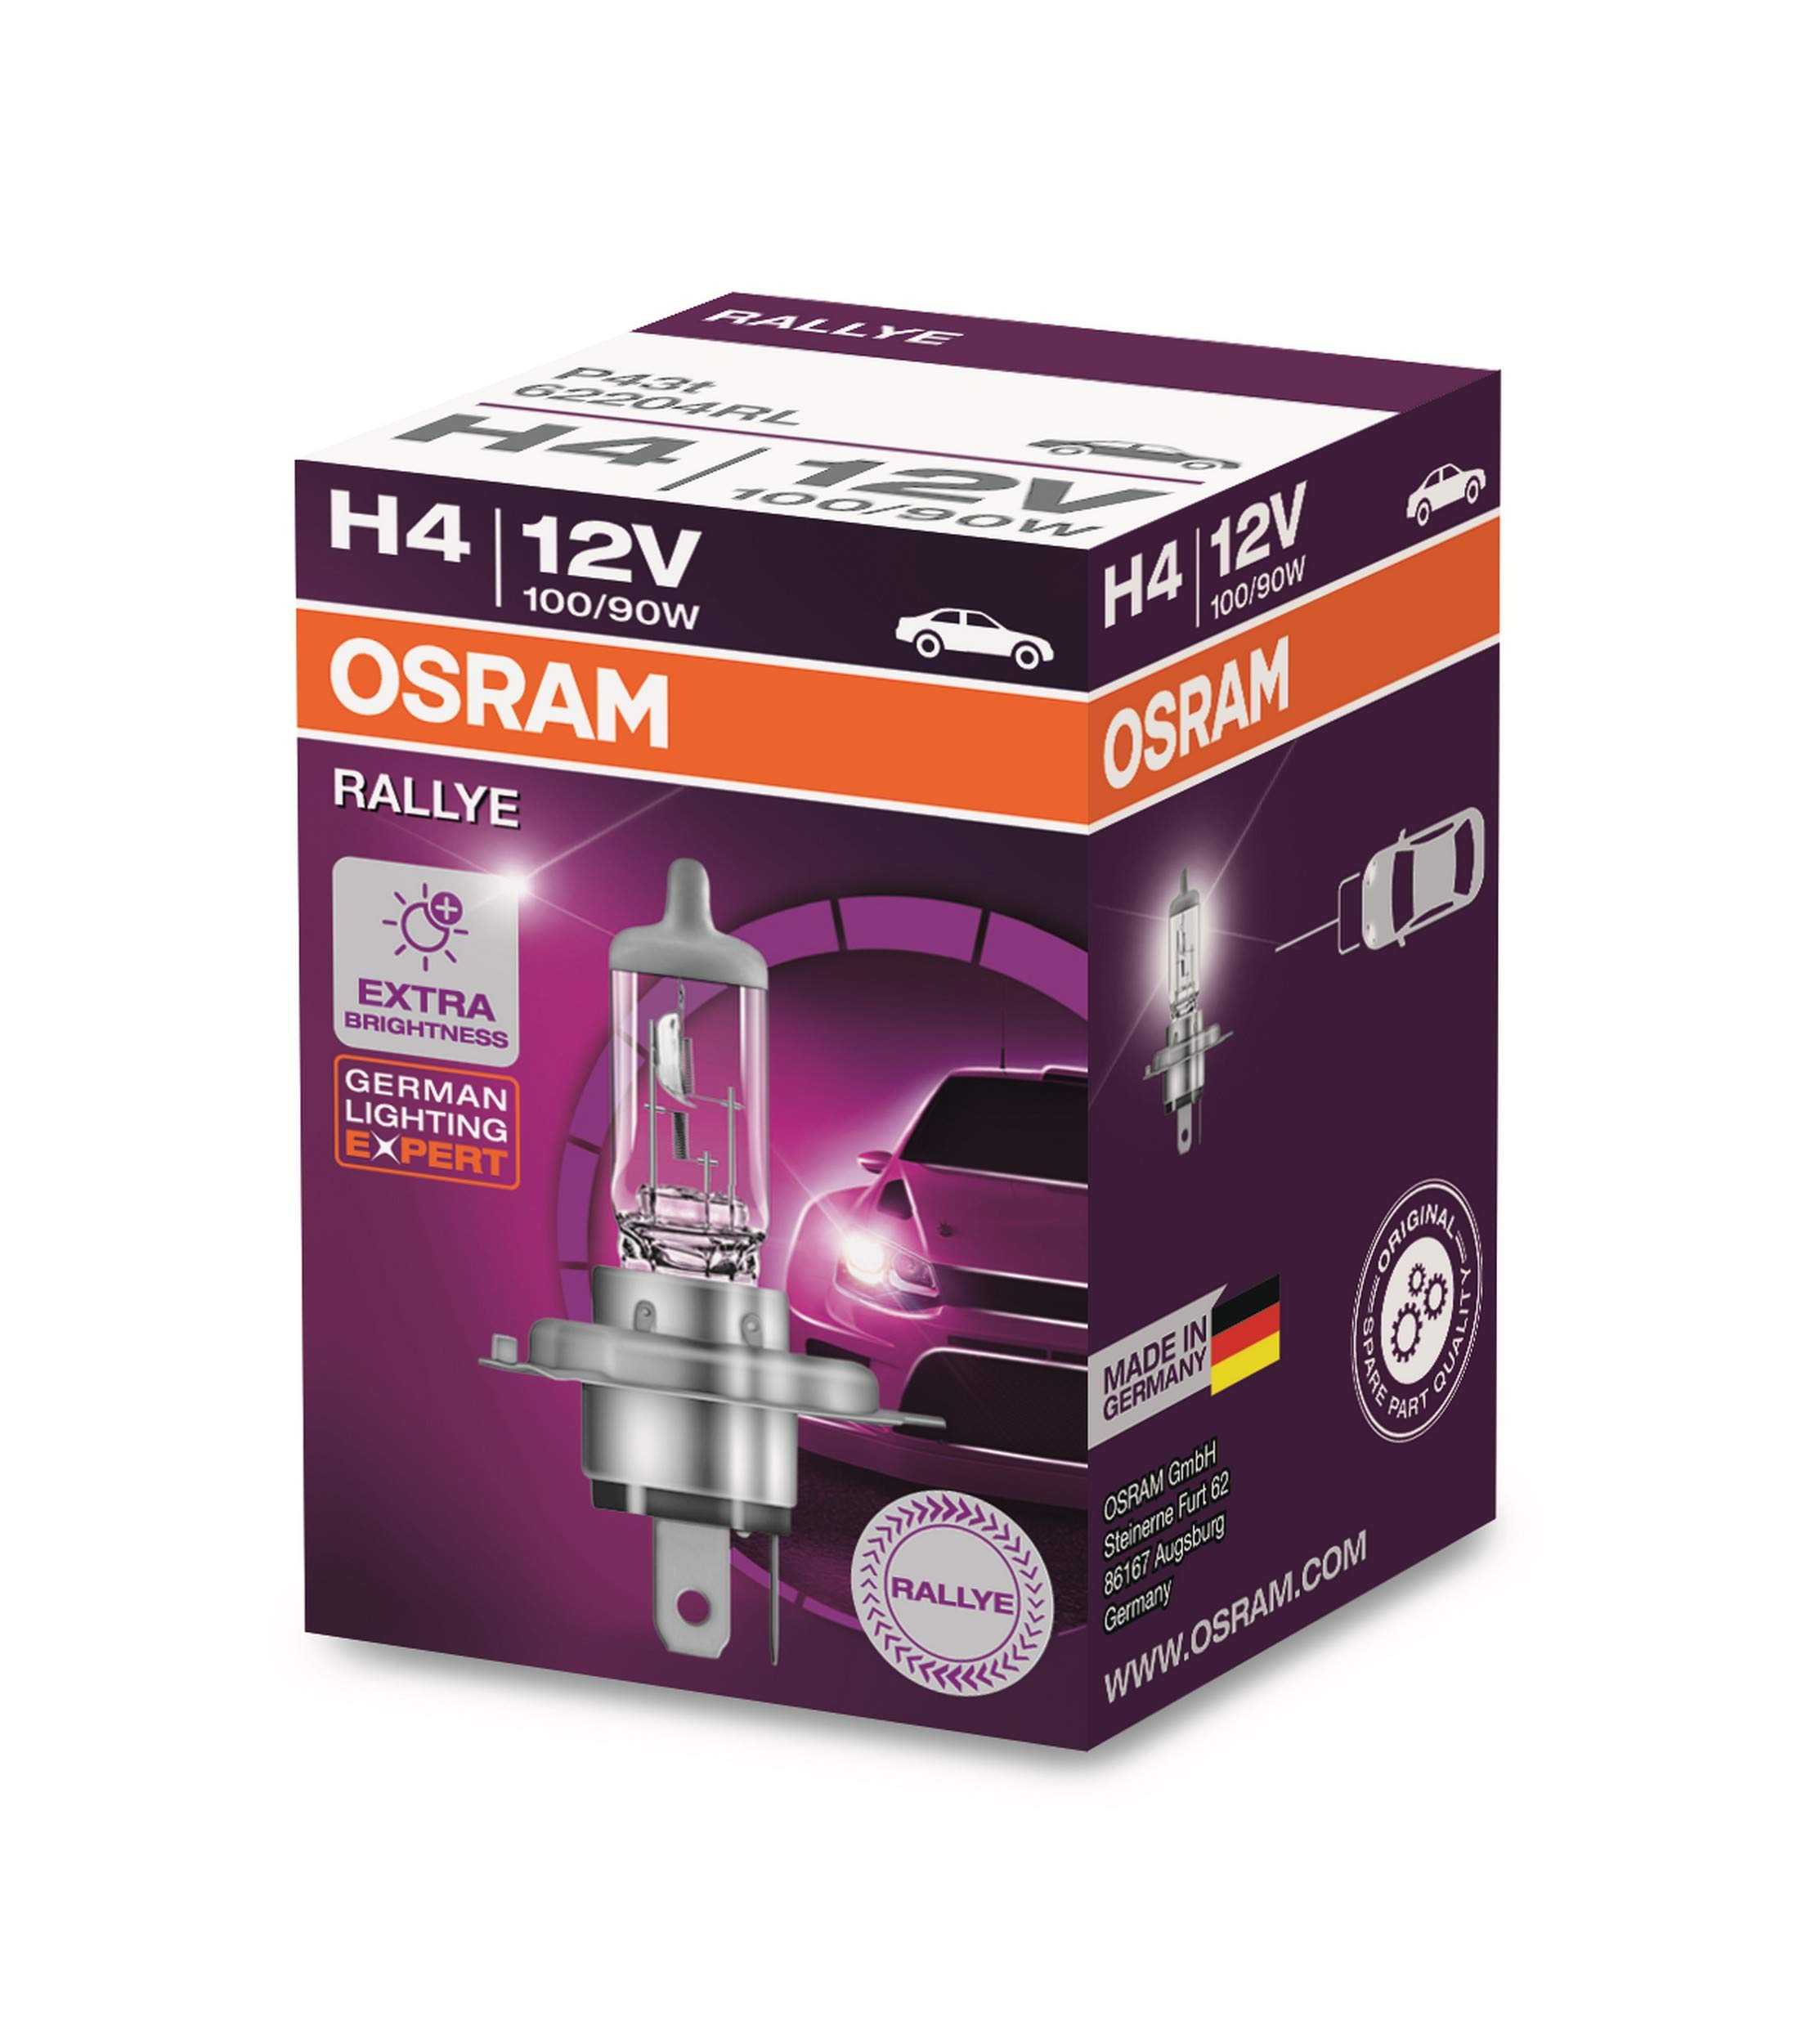 h4 halogen bulb 12v 100 90w